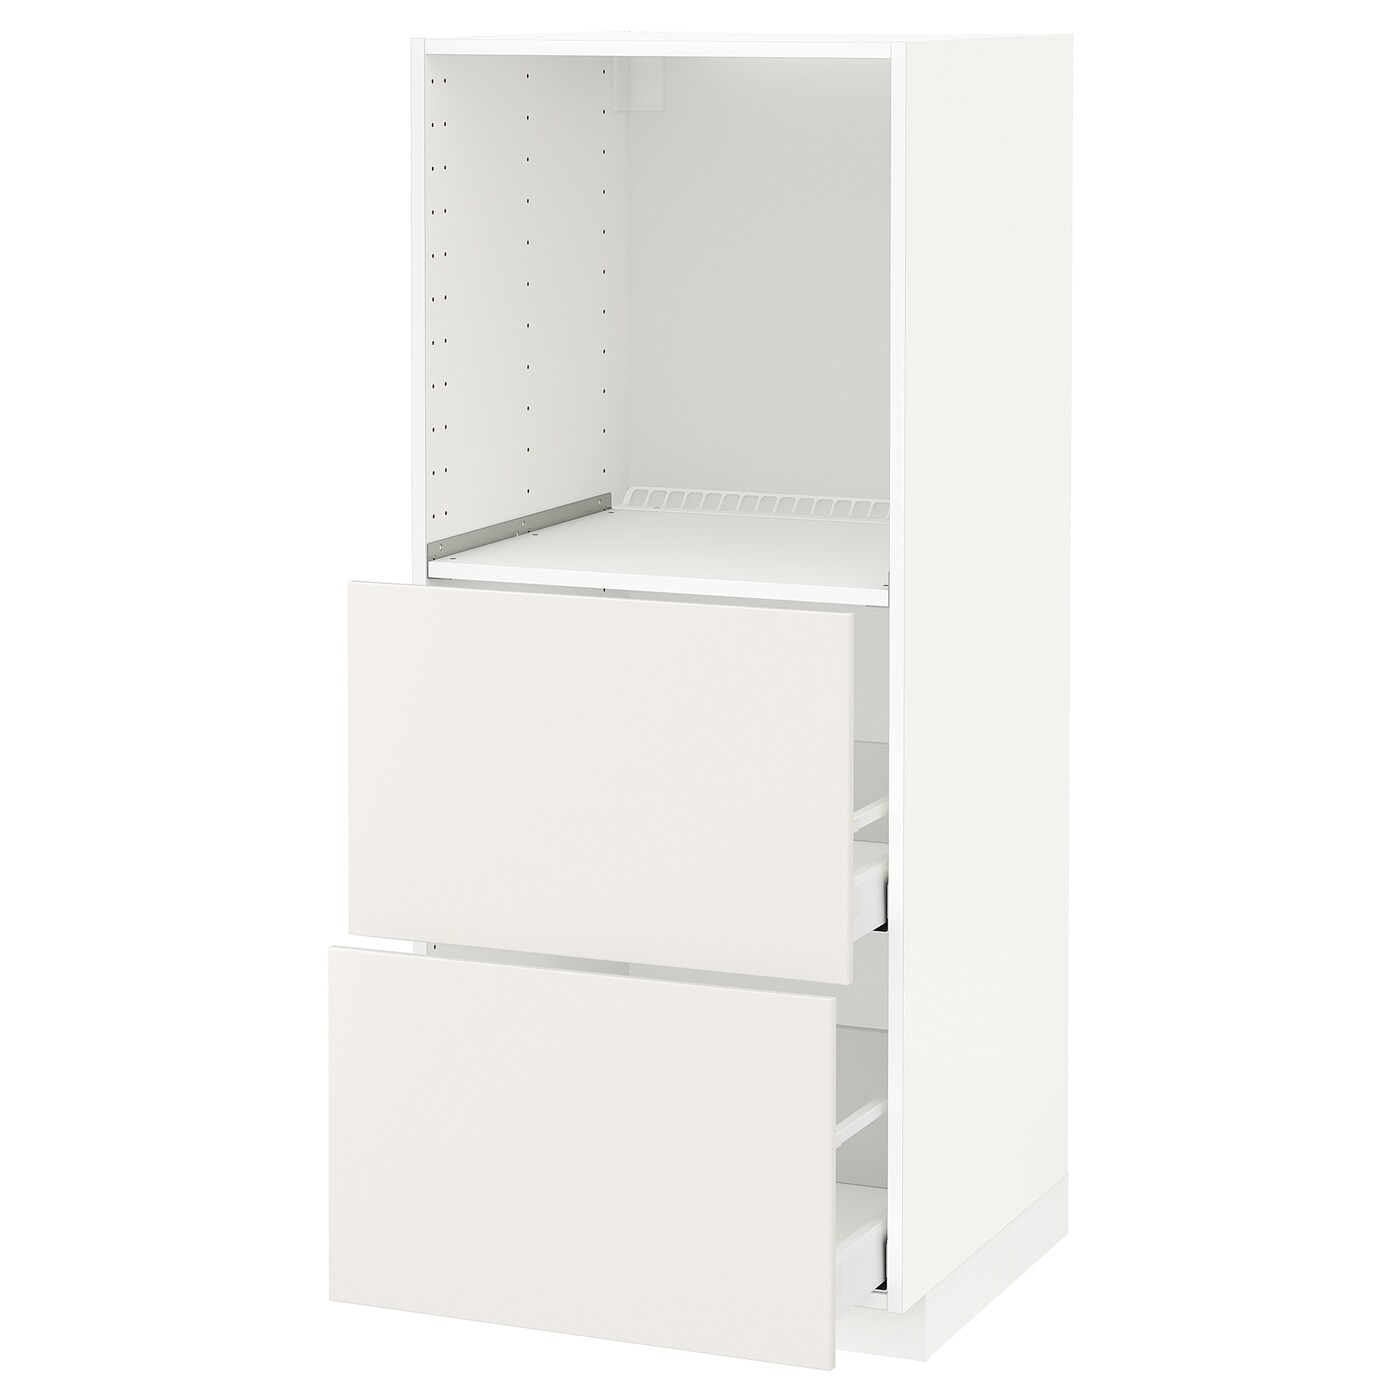 Напольный шкаф  - IKEA METOD MAXIMERA, 148x61,6x60см, белый, МЕТОД МАКСИМЕРА ИКЕА